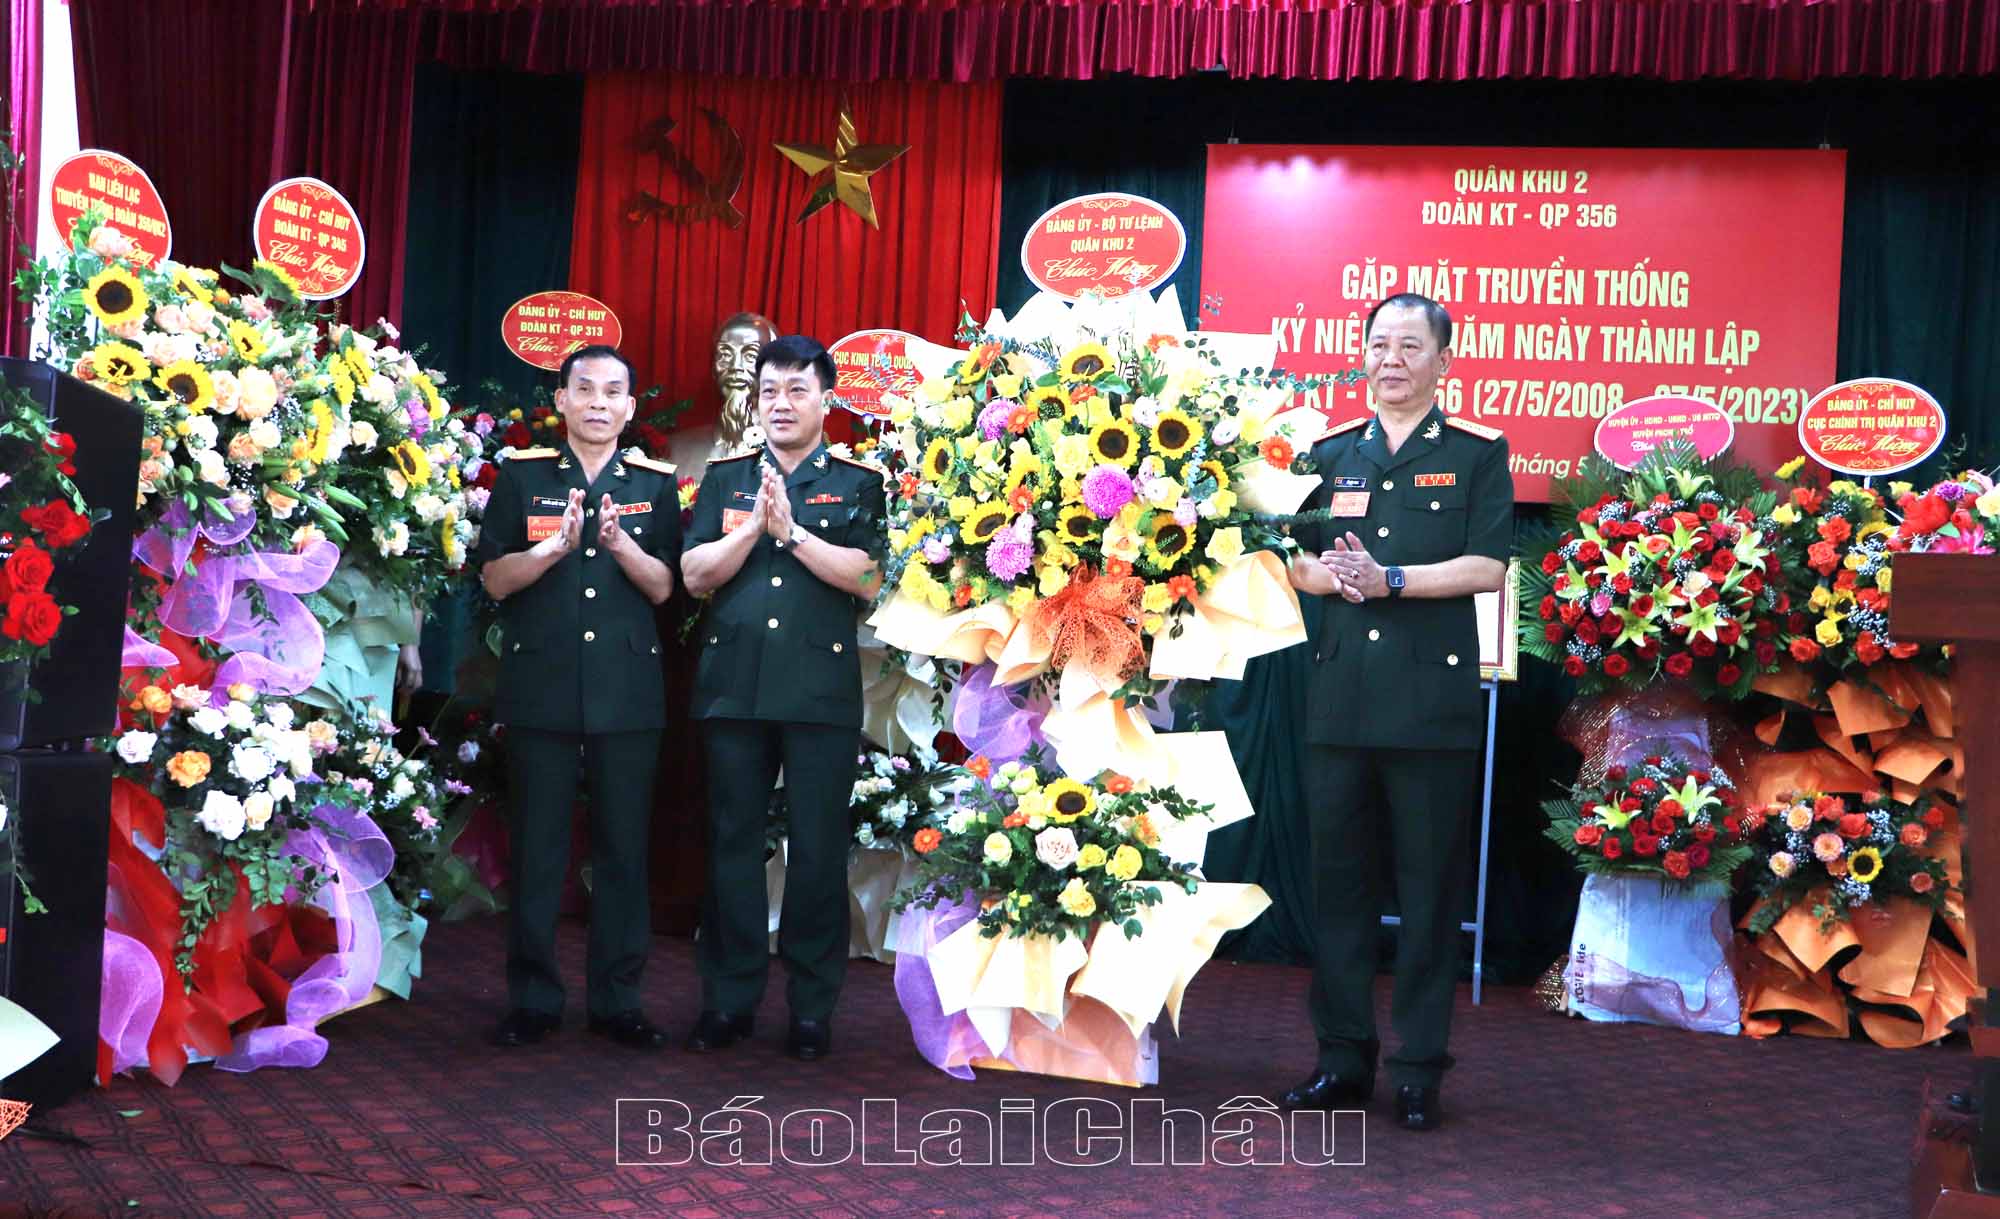 Đồng chí Đại tá Khổng Đình Tám - Chủ nhiệm Chính trị Quân khu II thay mặt lãnh đạo Đảng ủy, Bộ Tư lệnh Quân Khu II tặng hoa chúc mừng Đoàn KTQP 356 tại buổi Gặp mặt.